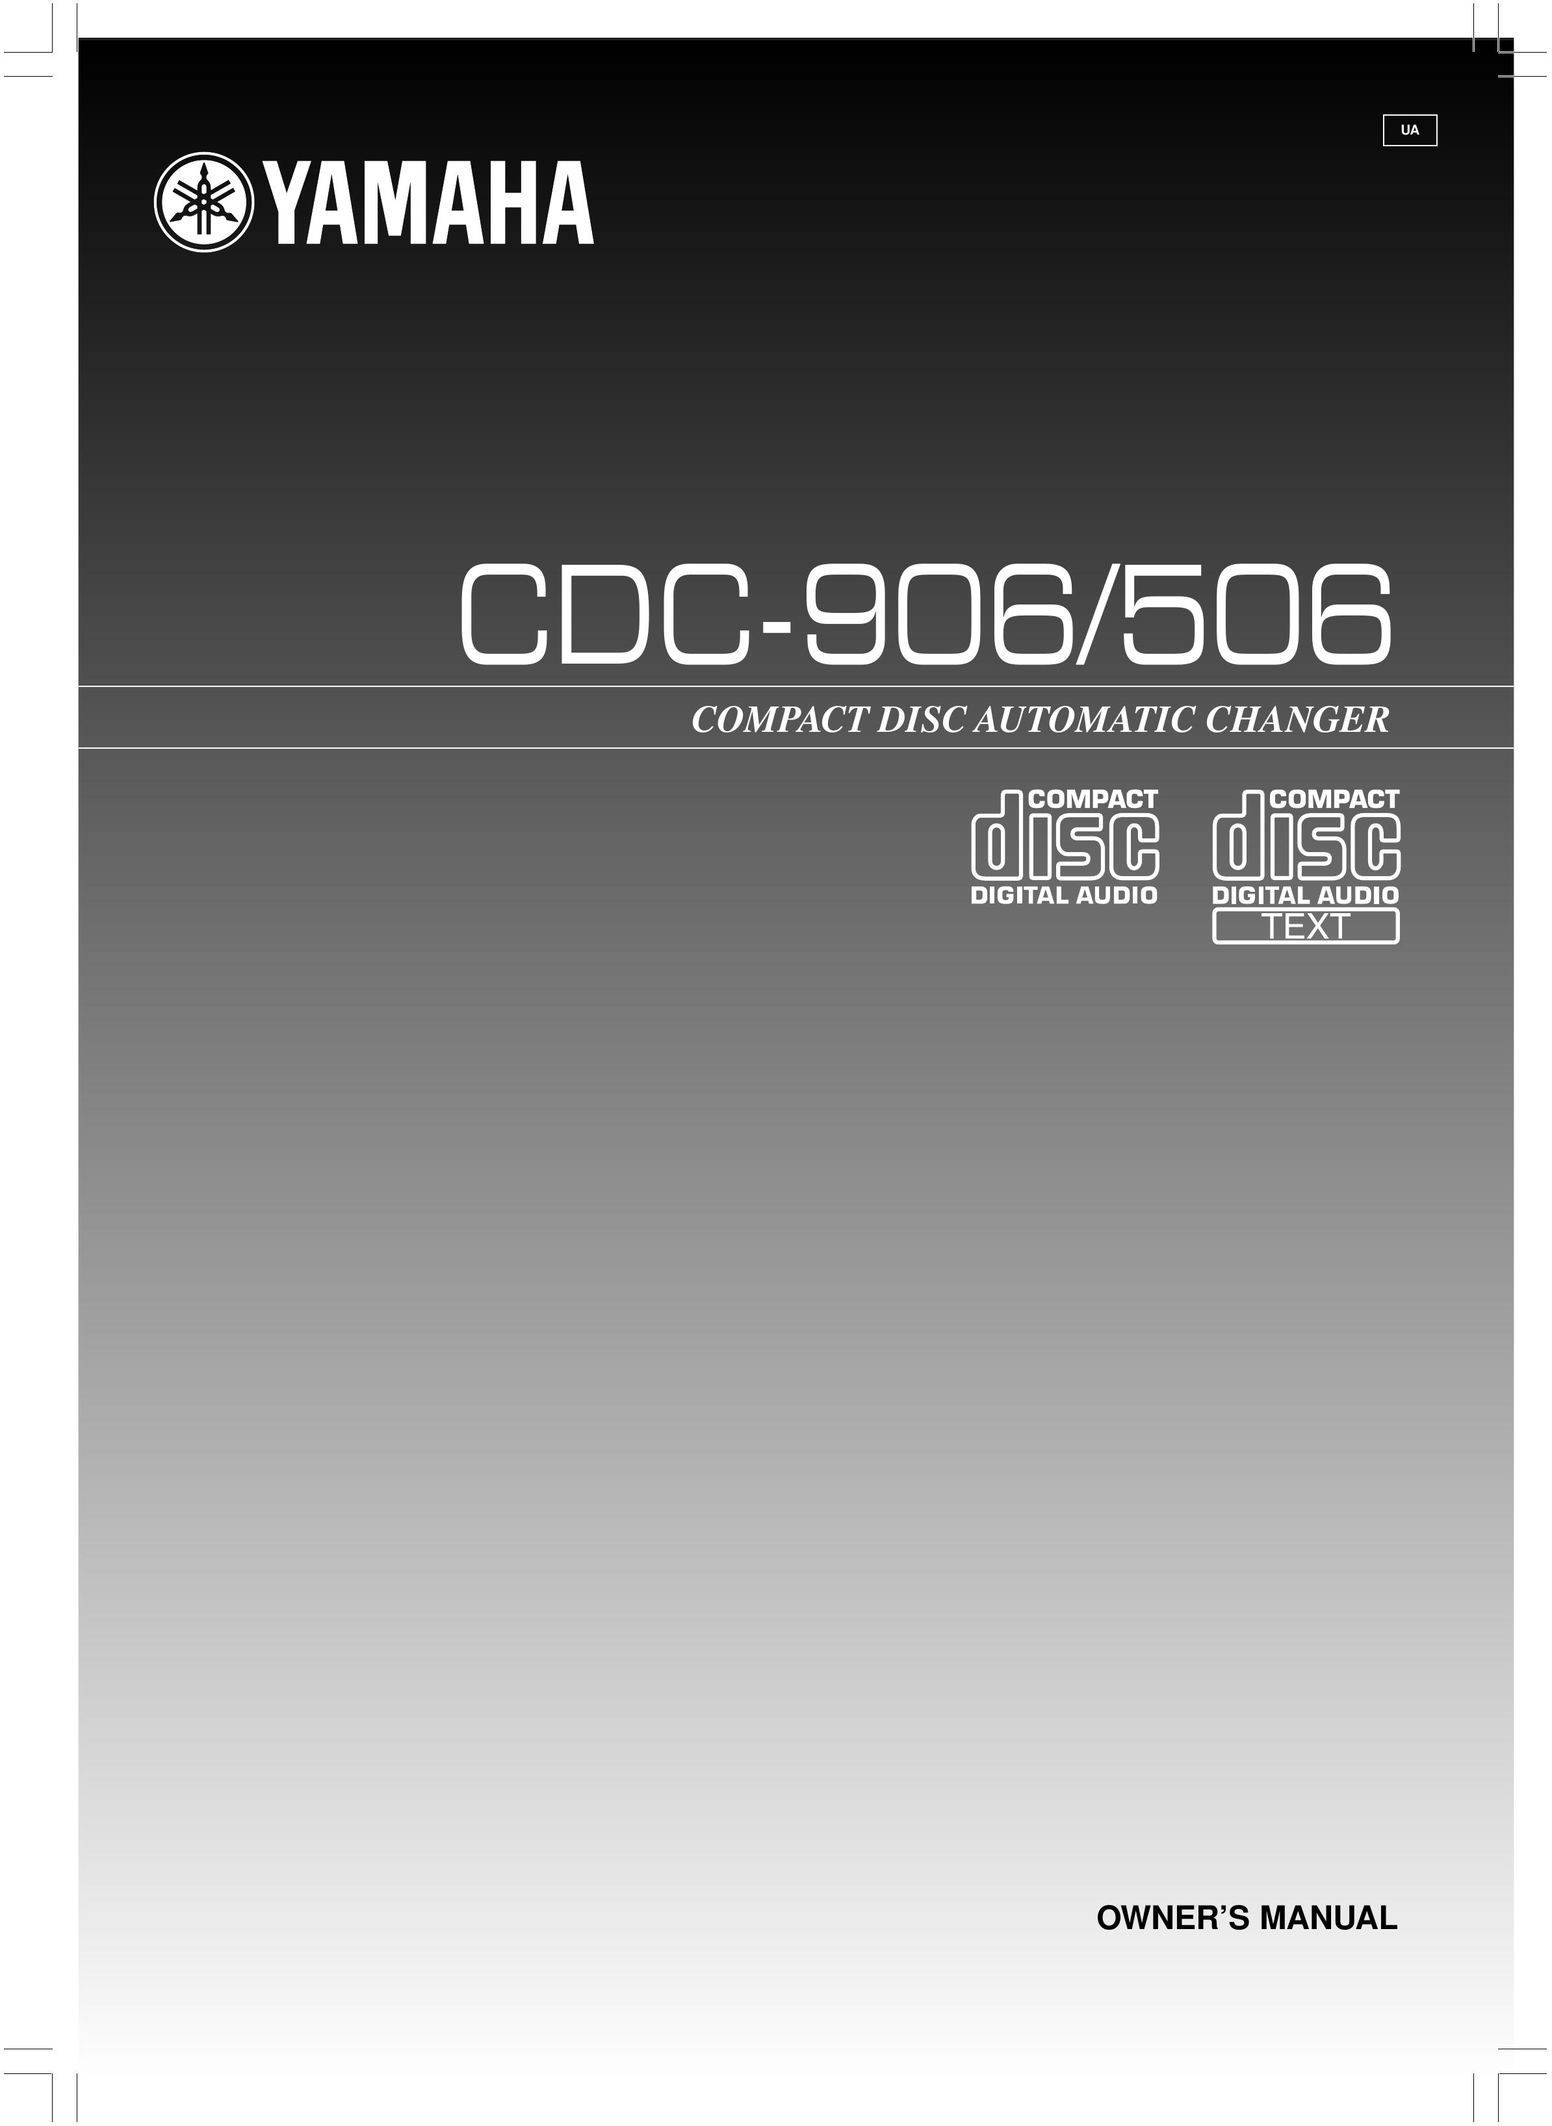 Yamaha CDC-906 CD Player User Manual